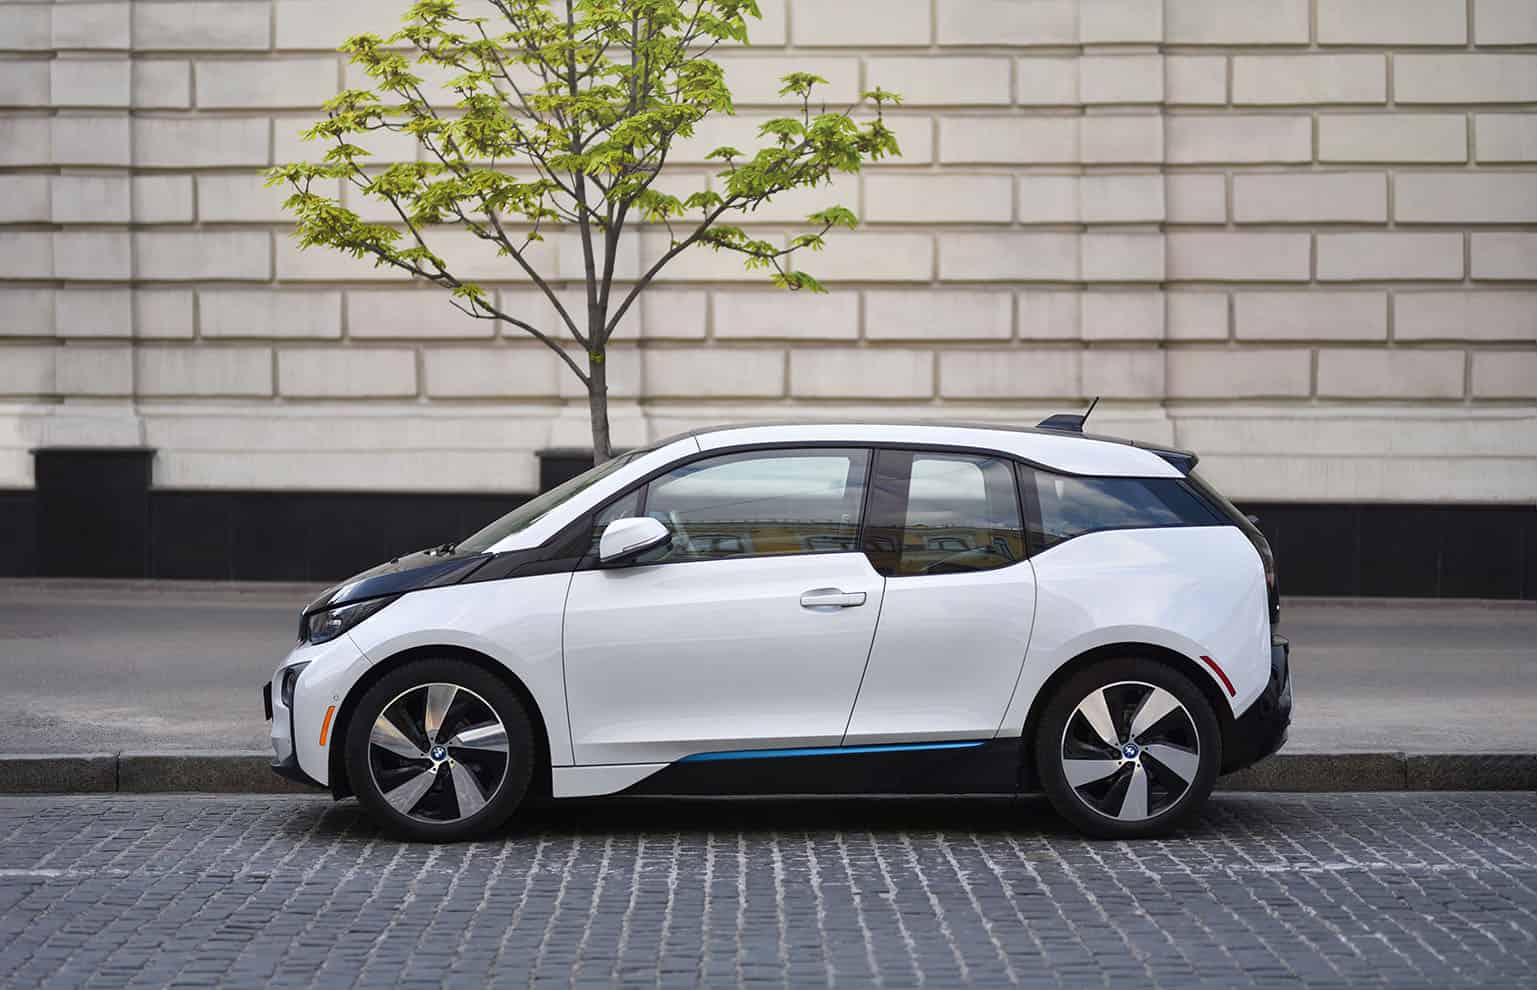 Utilisation plus verte et économique, performances en constantes améliorations, a voiture électrique semble être l’avenir de l’automobile.